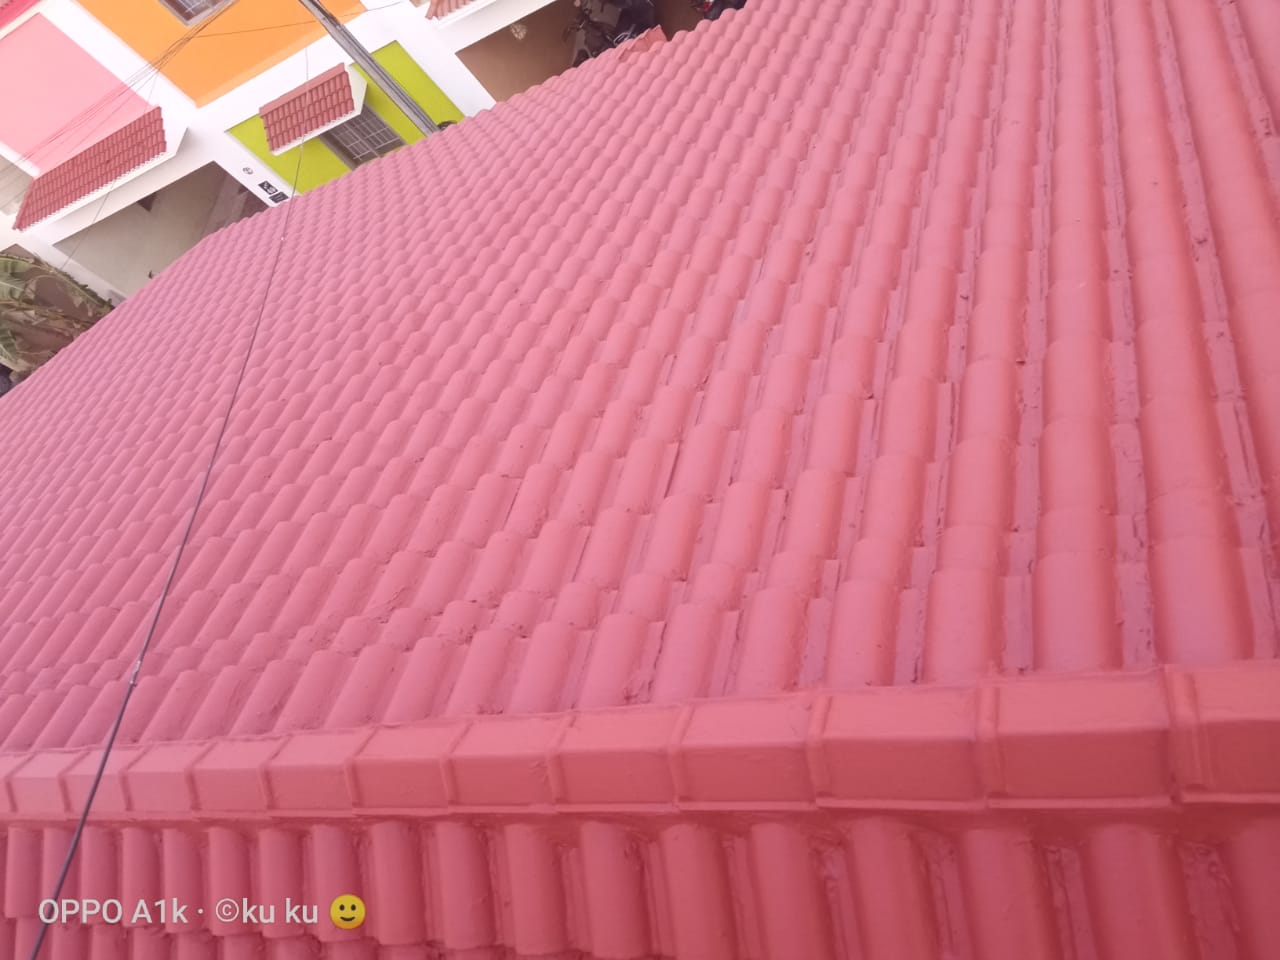 Roof Tile Waterproofing in TamilNadu